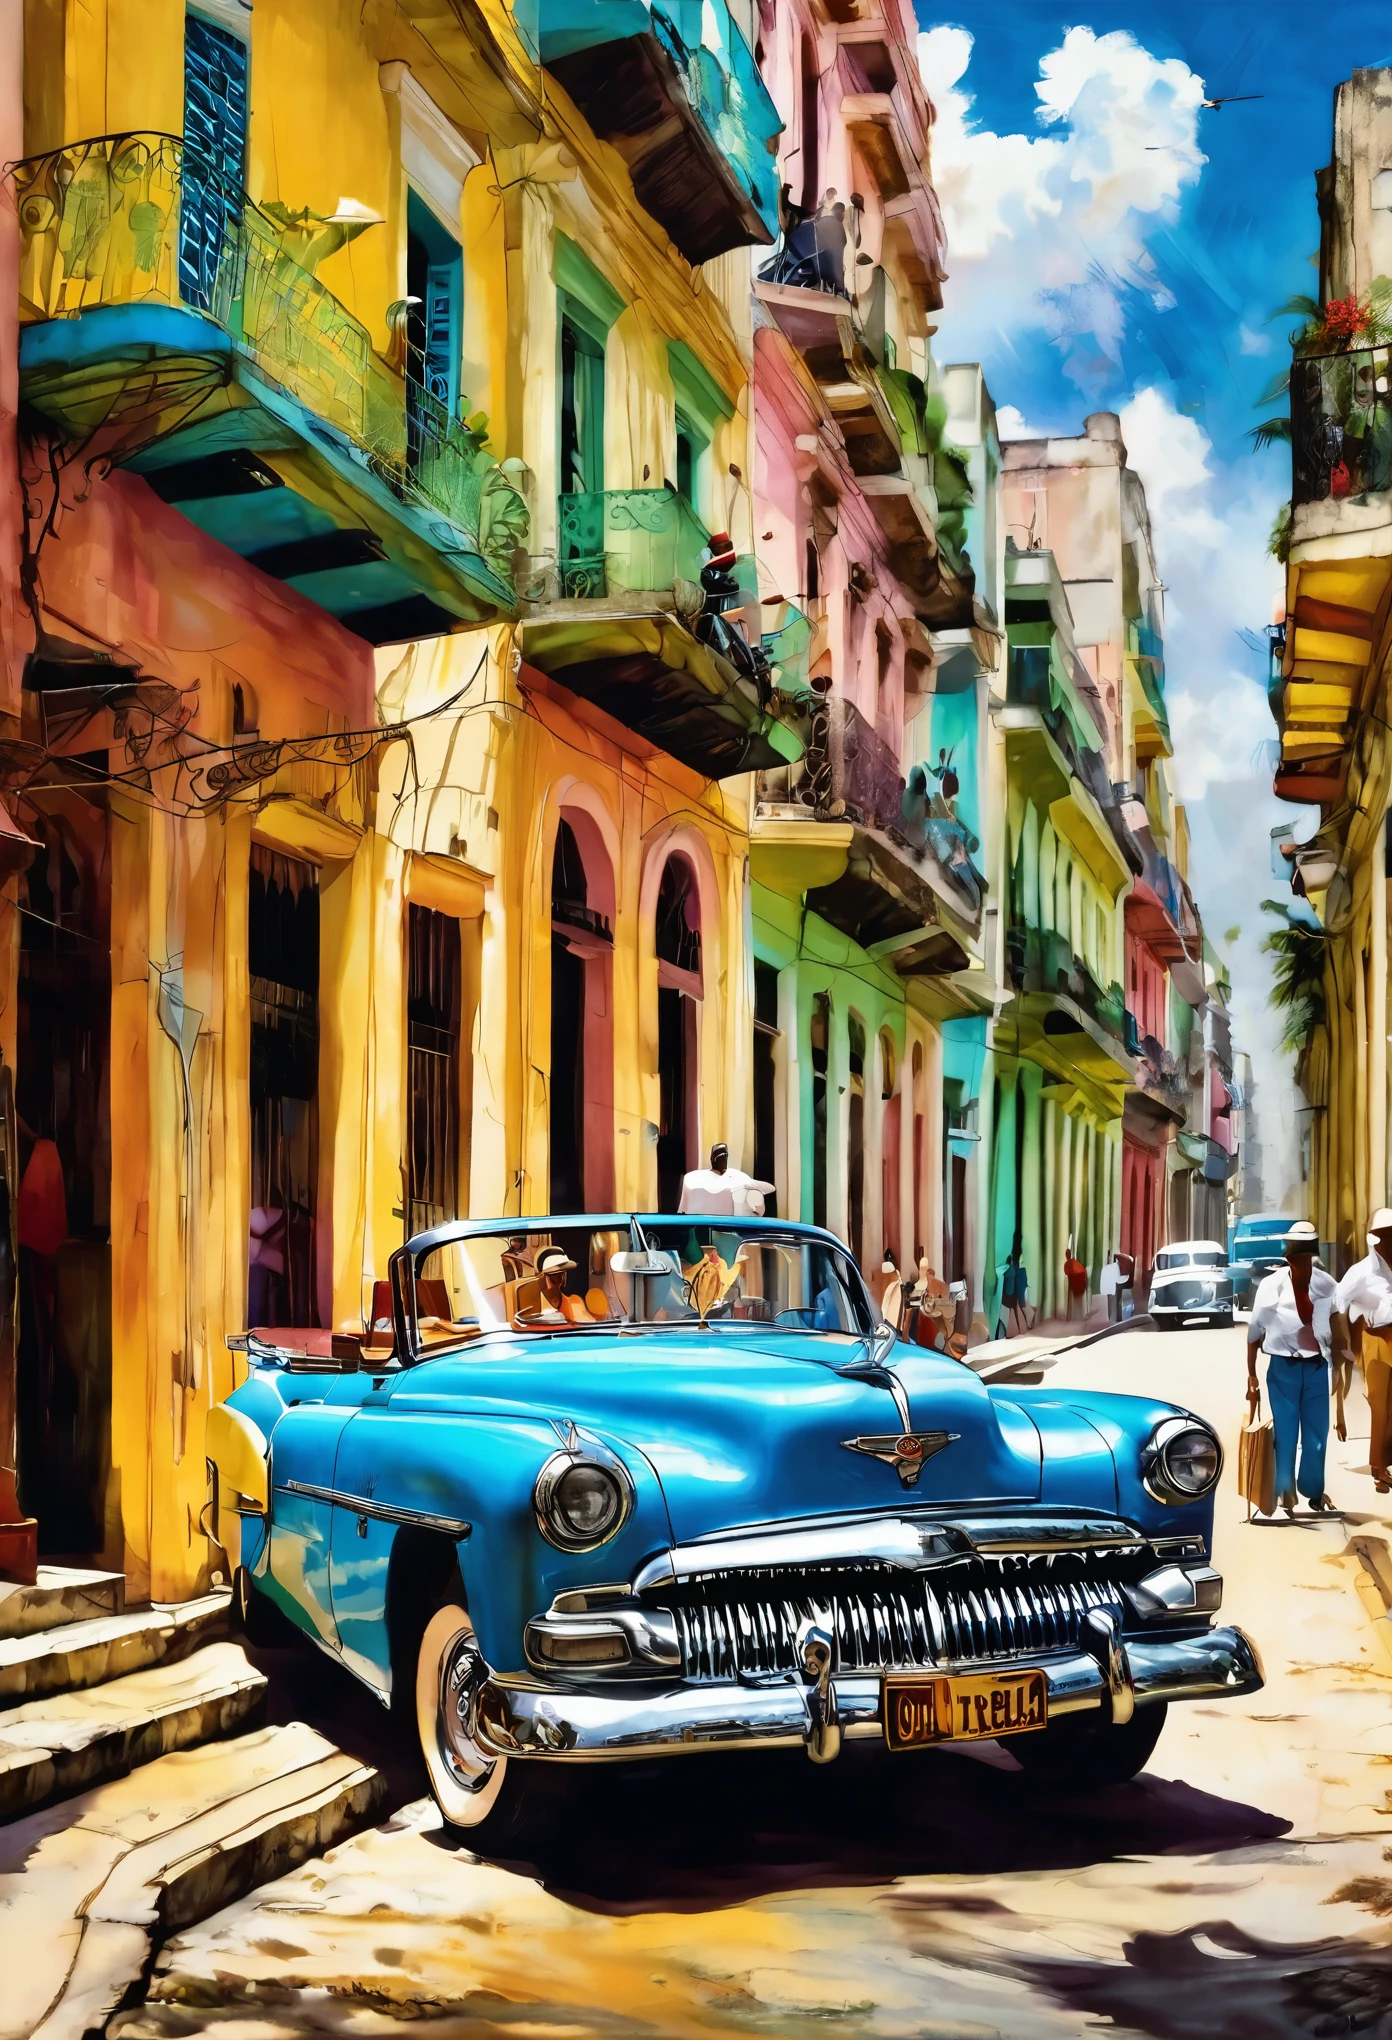 (Tyndall Effect Art of Cuba Art of Havana الفن الكوبي قماش طباعة هافانا هافانا:1.5), بواسطة بيوتر جابونسكي,(( منظر خلفي جميل للسيارة القديمة:1.5, في الخلفية طاولات وكراسي بار كولومبية مع أشخاص, الدفء, جو سعيد)), ينظر من الخلف, الجانب الخلفي, أفضل جودة, تحفة, العمل التمثيلي, الفن الرسمي, احترافي, مفصلة للغاية ومعقدة, 8 كيلو